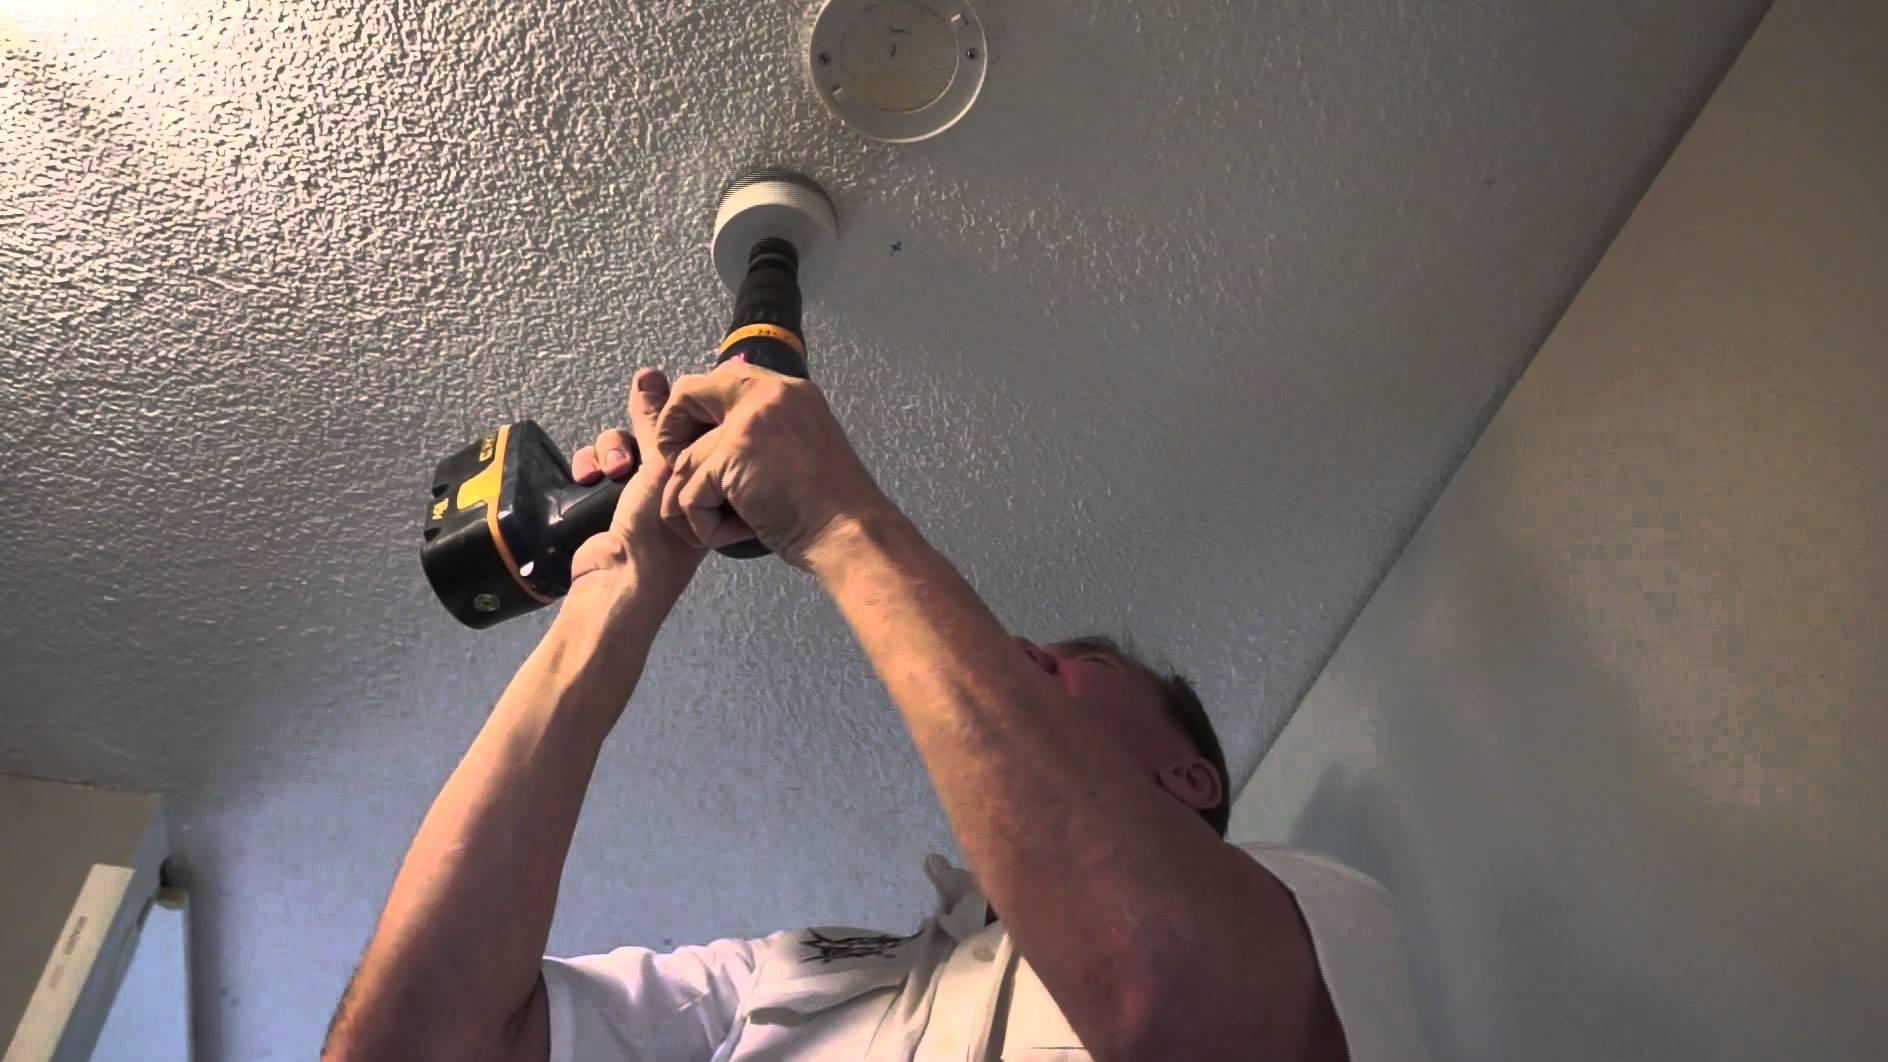 Merangkai Lampu Led 220v. Cara Praktis Membuat Lampu LED Sendiri di Rumah